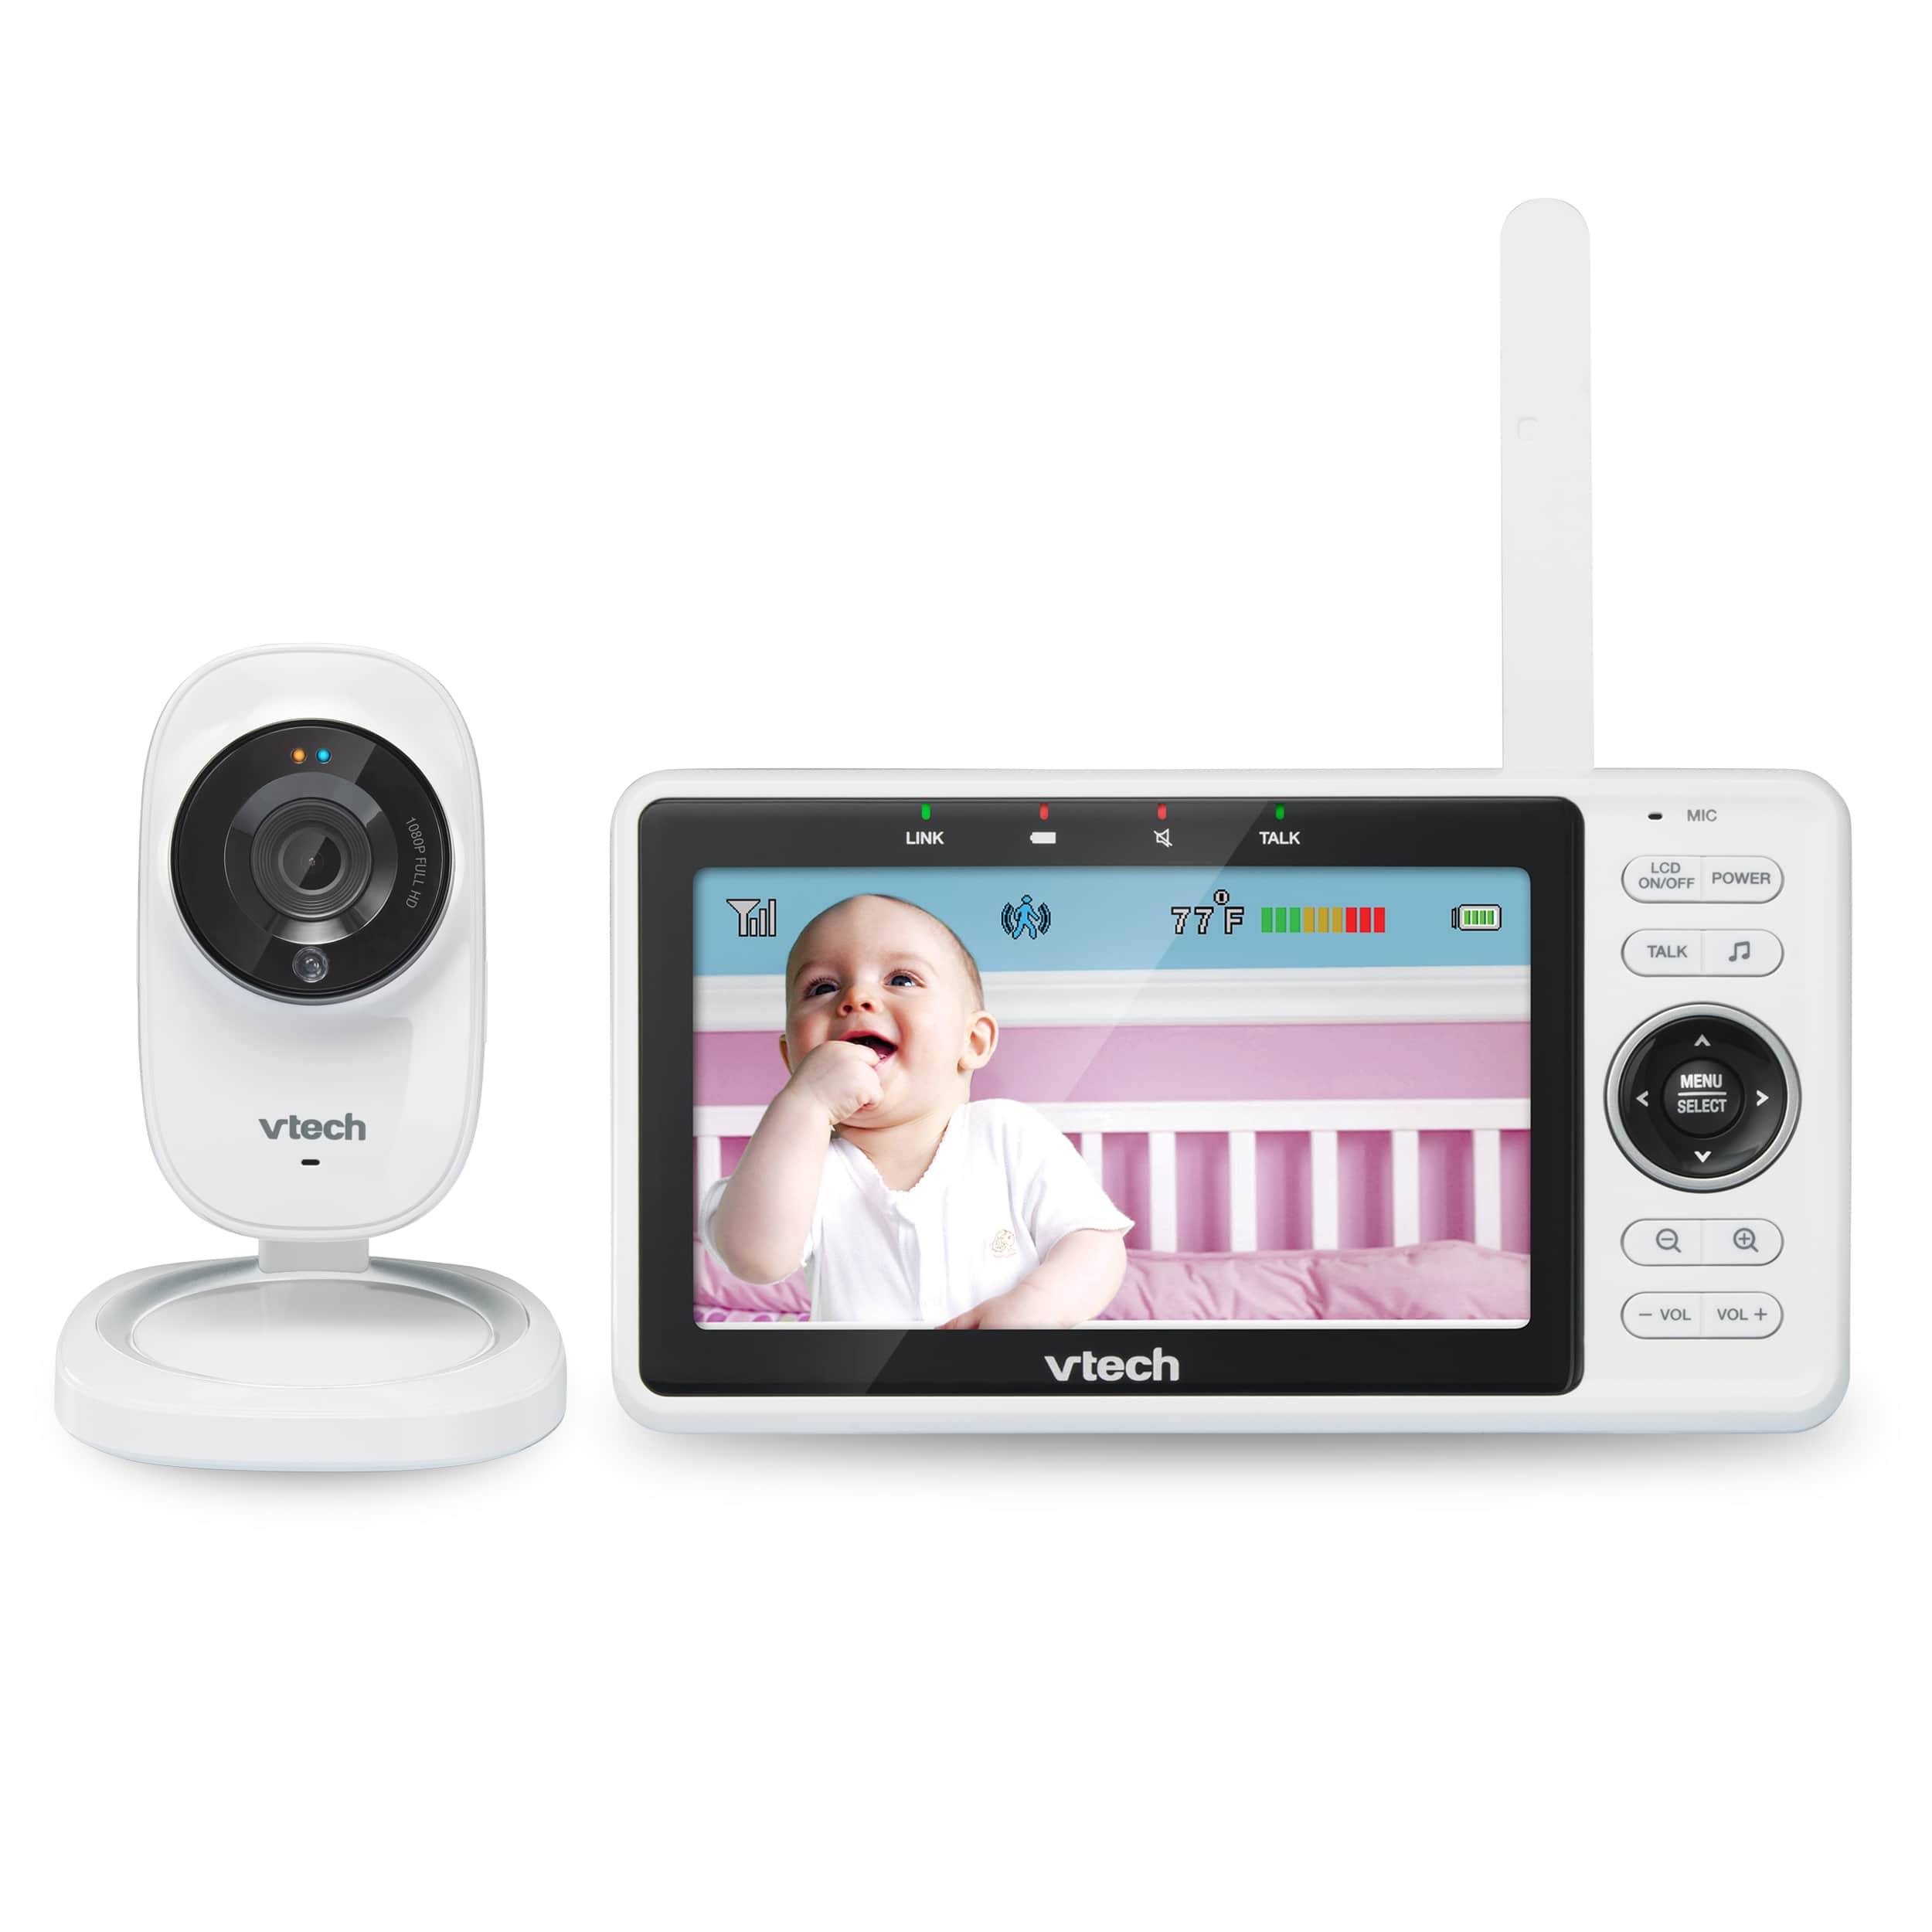 Moniteur video pour bebe avec acces a distance par Wi-Fi, ecran de 5 po et affichage HD 1080p, veilleuse integree